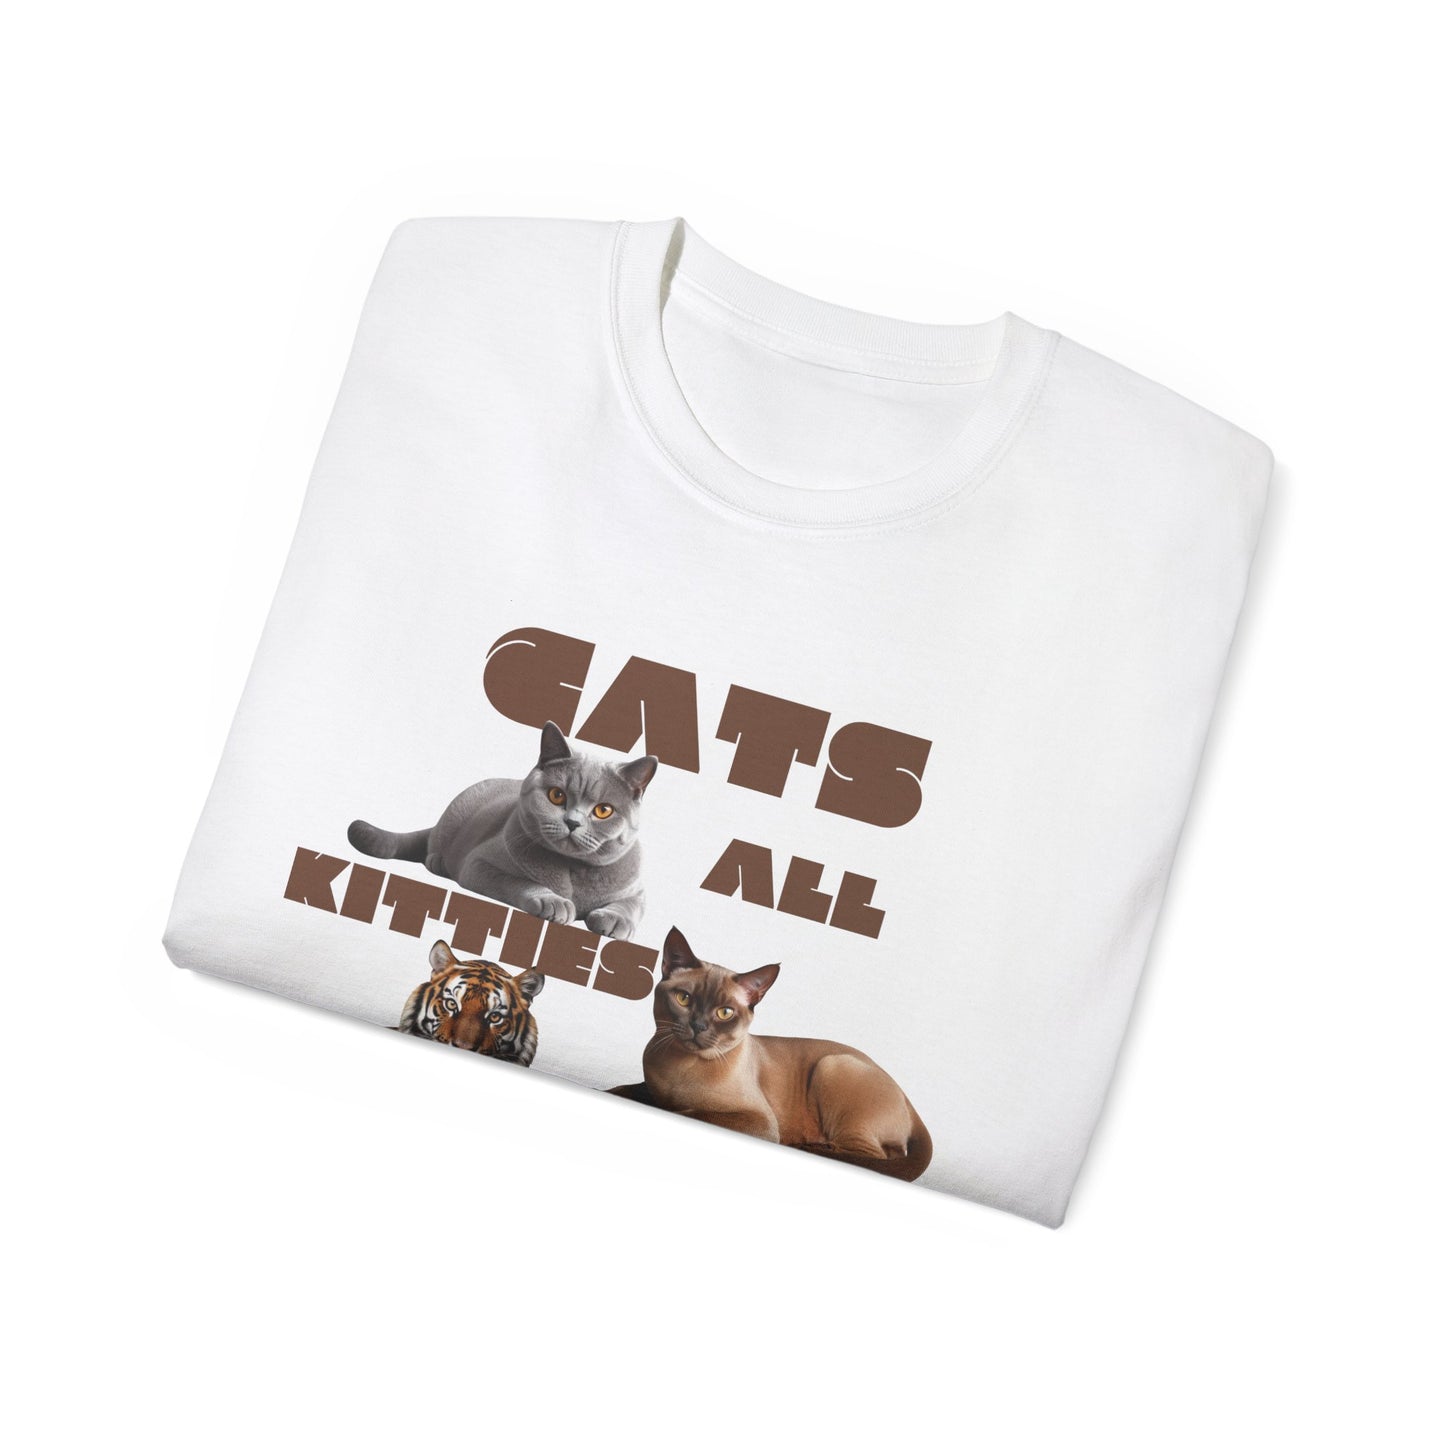 Katzen Shirt, Katzenfans aufgepasst Unisex Shirt Statement Piece, Herren T-Shit mit Aufschrift, Bio-Unisex T-Shirt, Tri-blend T-Shirt, Tee